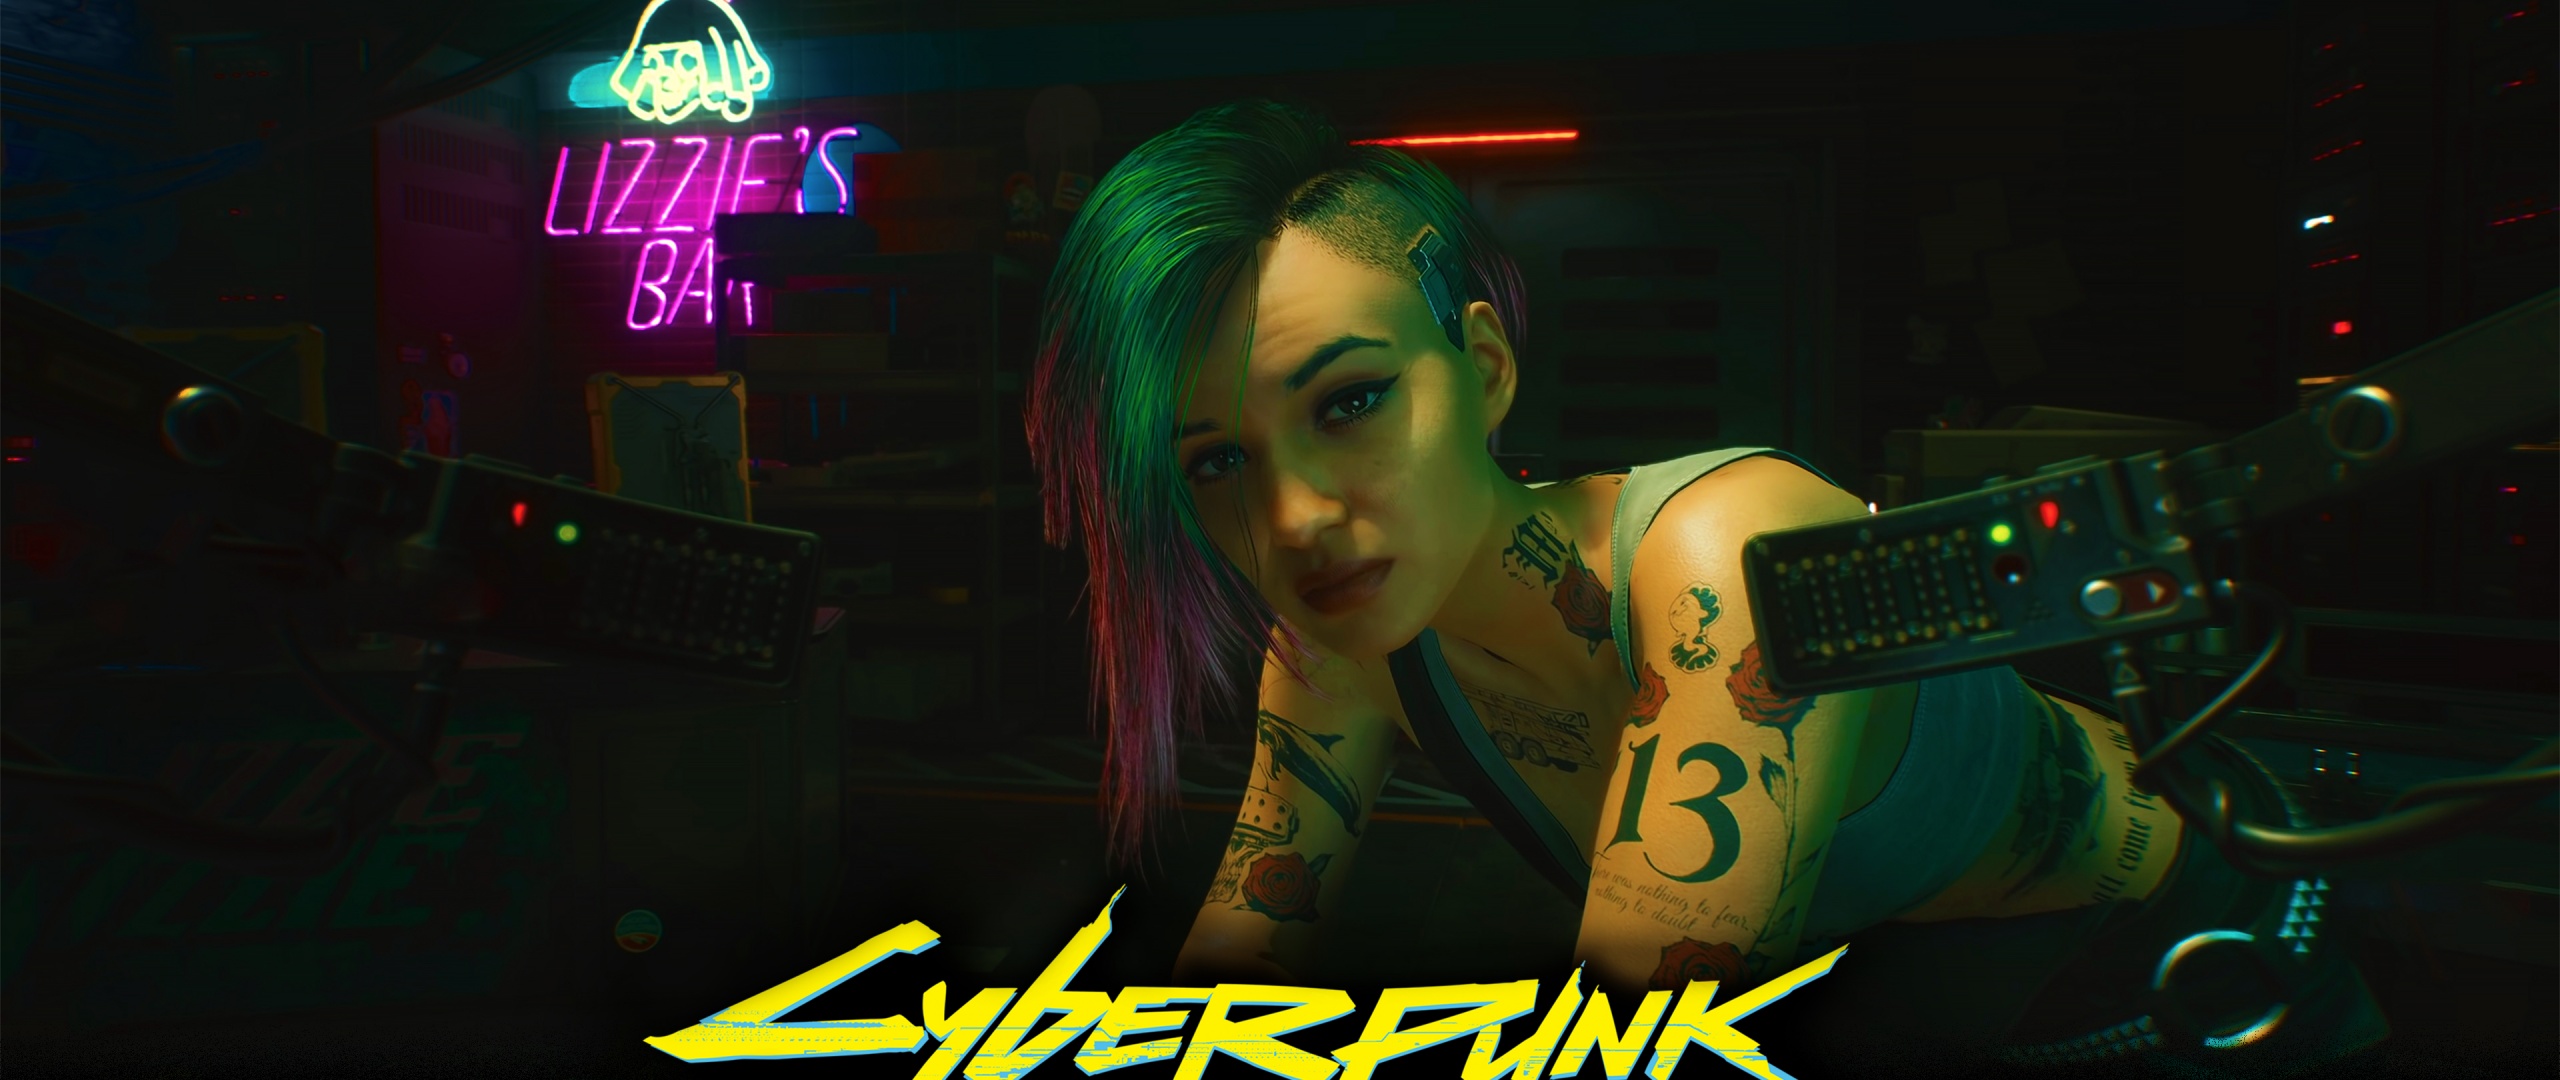 Cyberpunk 2077 Judy Alvarez wallpaper: Cyberpunk 2077 đã trở thành trò chơi đáng mong đợi nhất của năm và Judy Alvarez chắc chắn là một trong những nhân vật được quan tâm nhất. Hãy tải về hình nền 4K này để cảm nhận sự tàn nhẫn, uy lực và độc đáo của Judy.